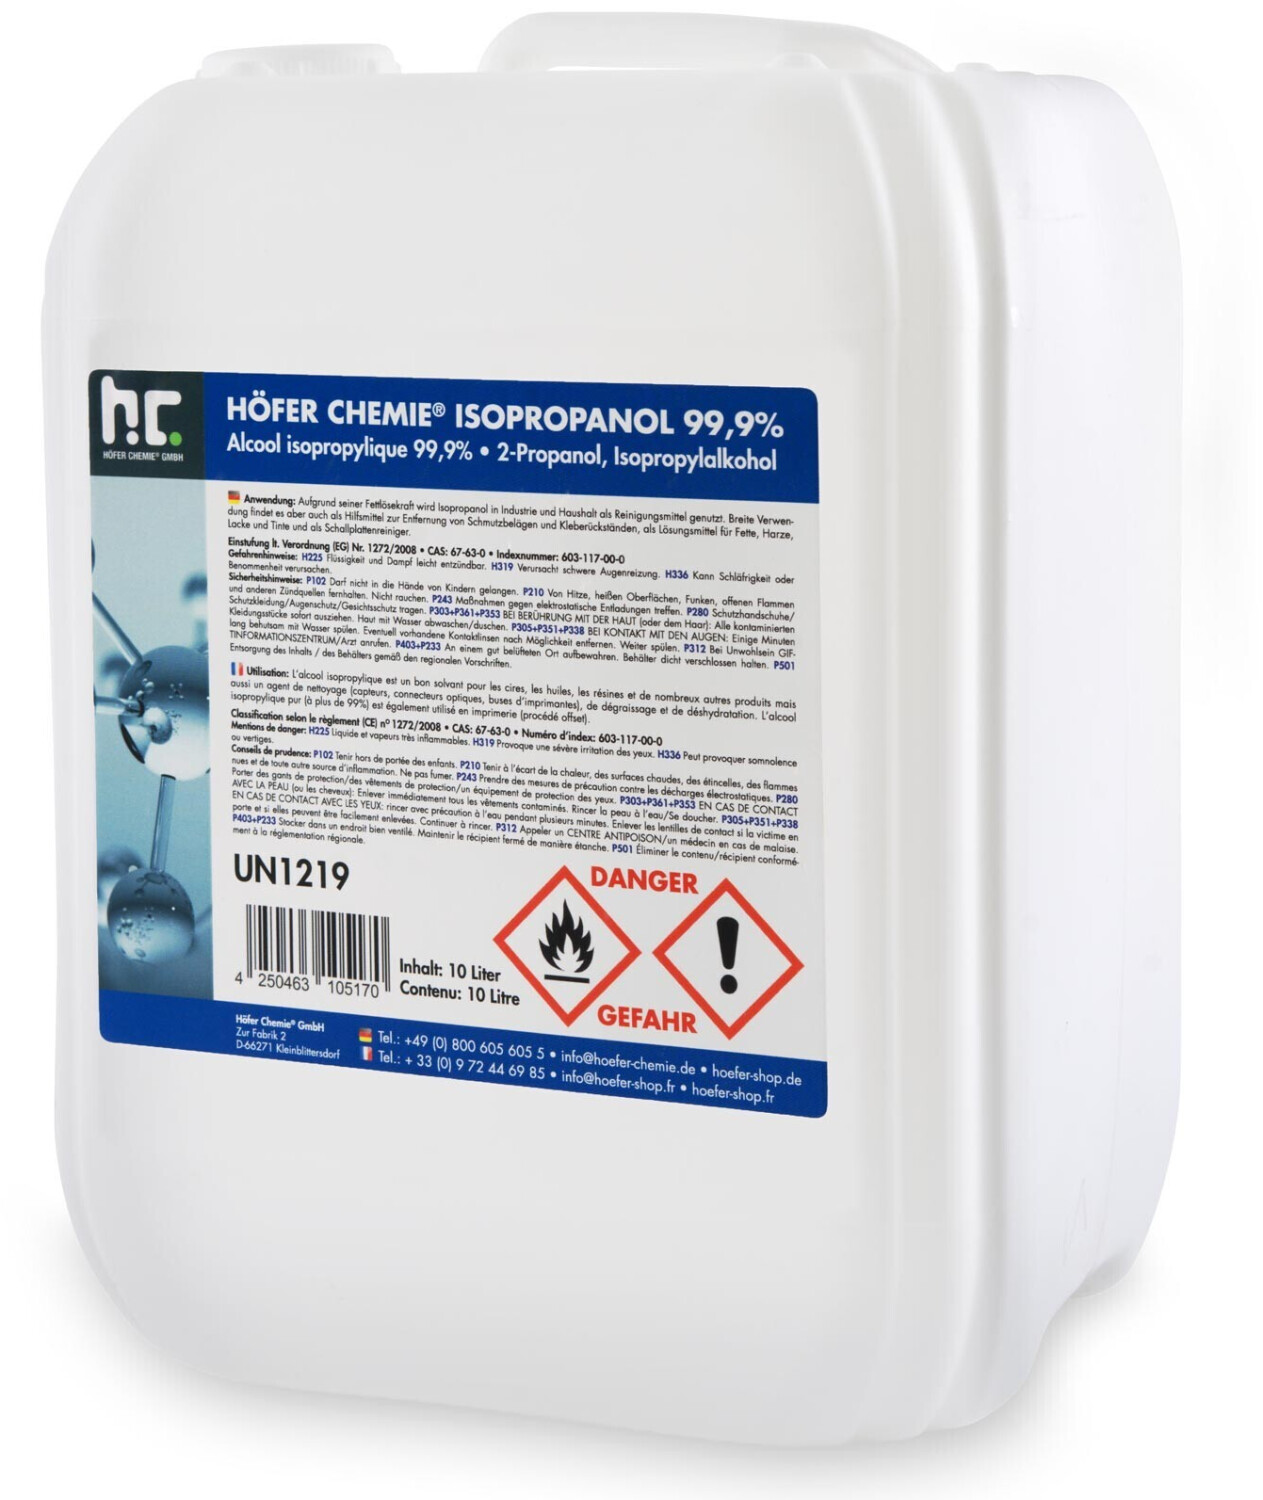 Höfer Chemie Isopropanol 99,9% 20l au meilleur prix sur